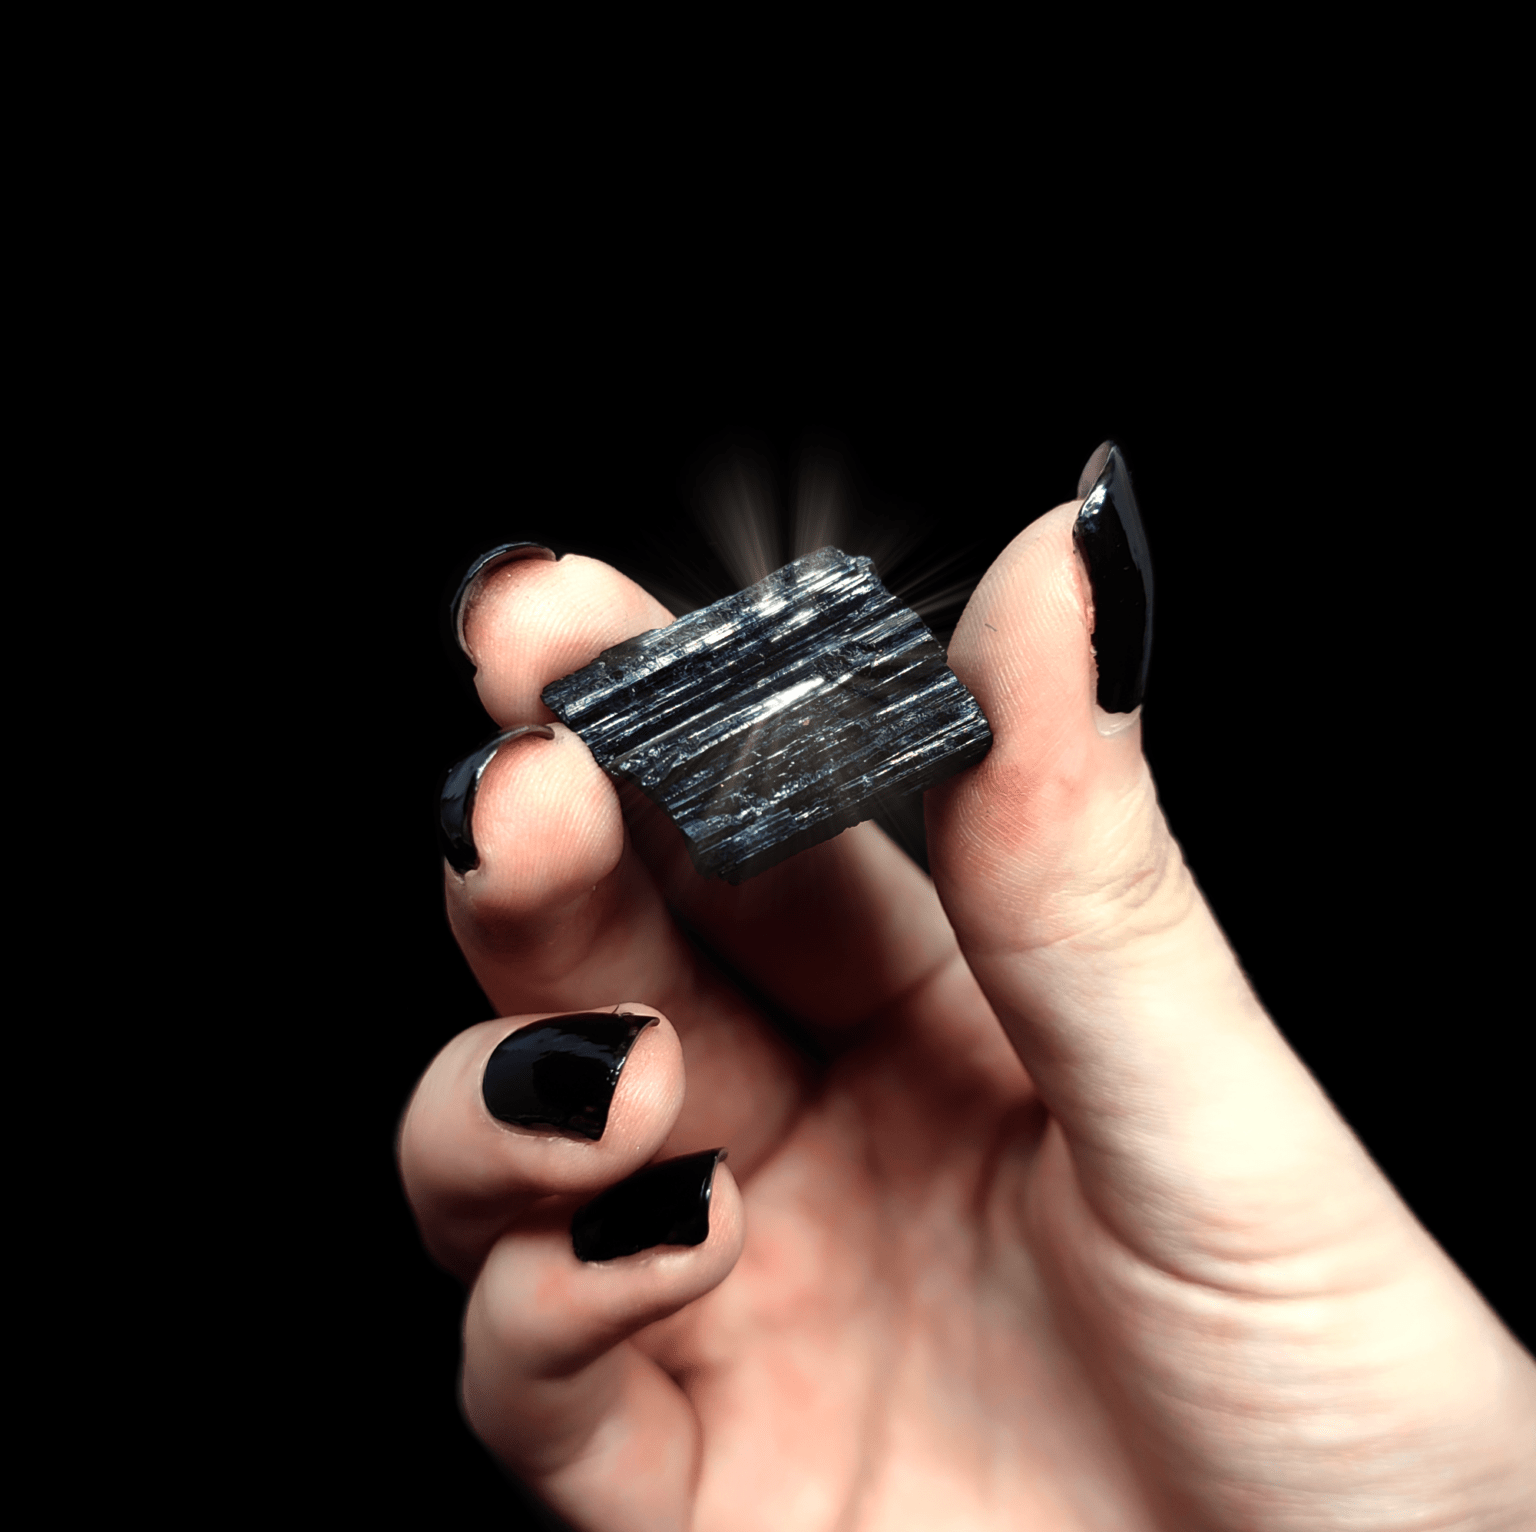 Ein schwarzer Turmalin Kristall mit Beleuchtung, welcher von einer Frauenhand gehalten wird.